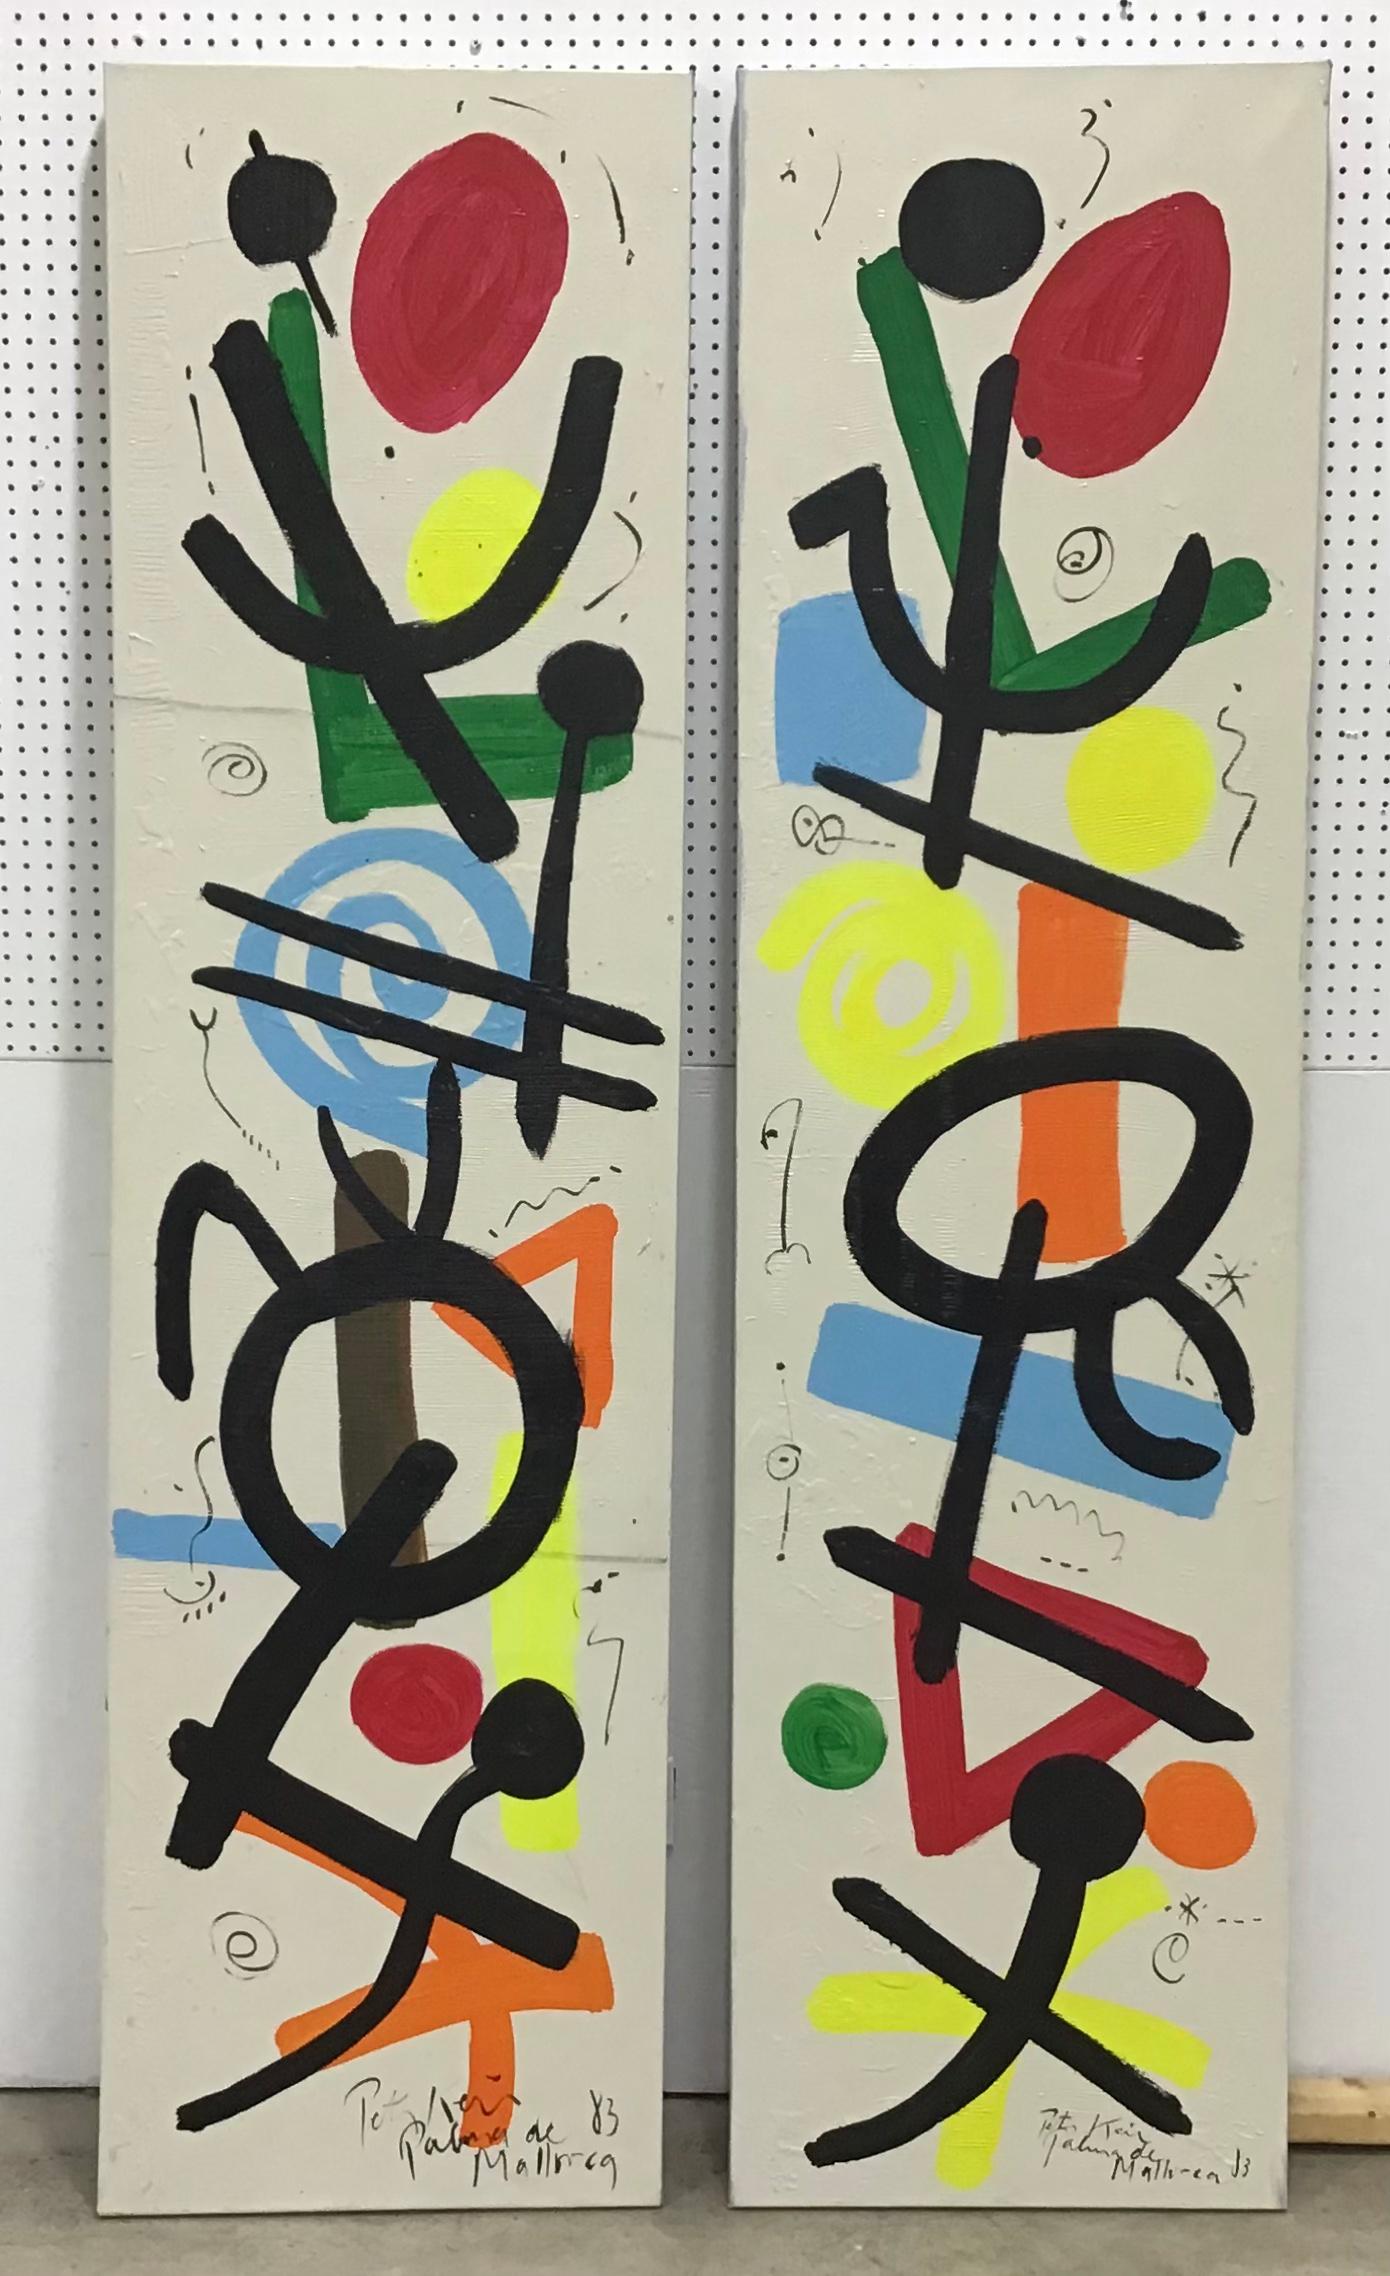 Peter Keil ist ein deutscher Künstler, der sich vor allem mit dem abstrakten Expressionismus beschäftigt. Keil malte mit einigen der ganz Großen, darunter Joan Miró, Andy Warhol und Pablo Picasso, um nur einige zu nennen.
Dies ist ein großes Paar